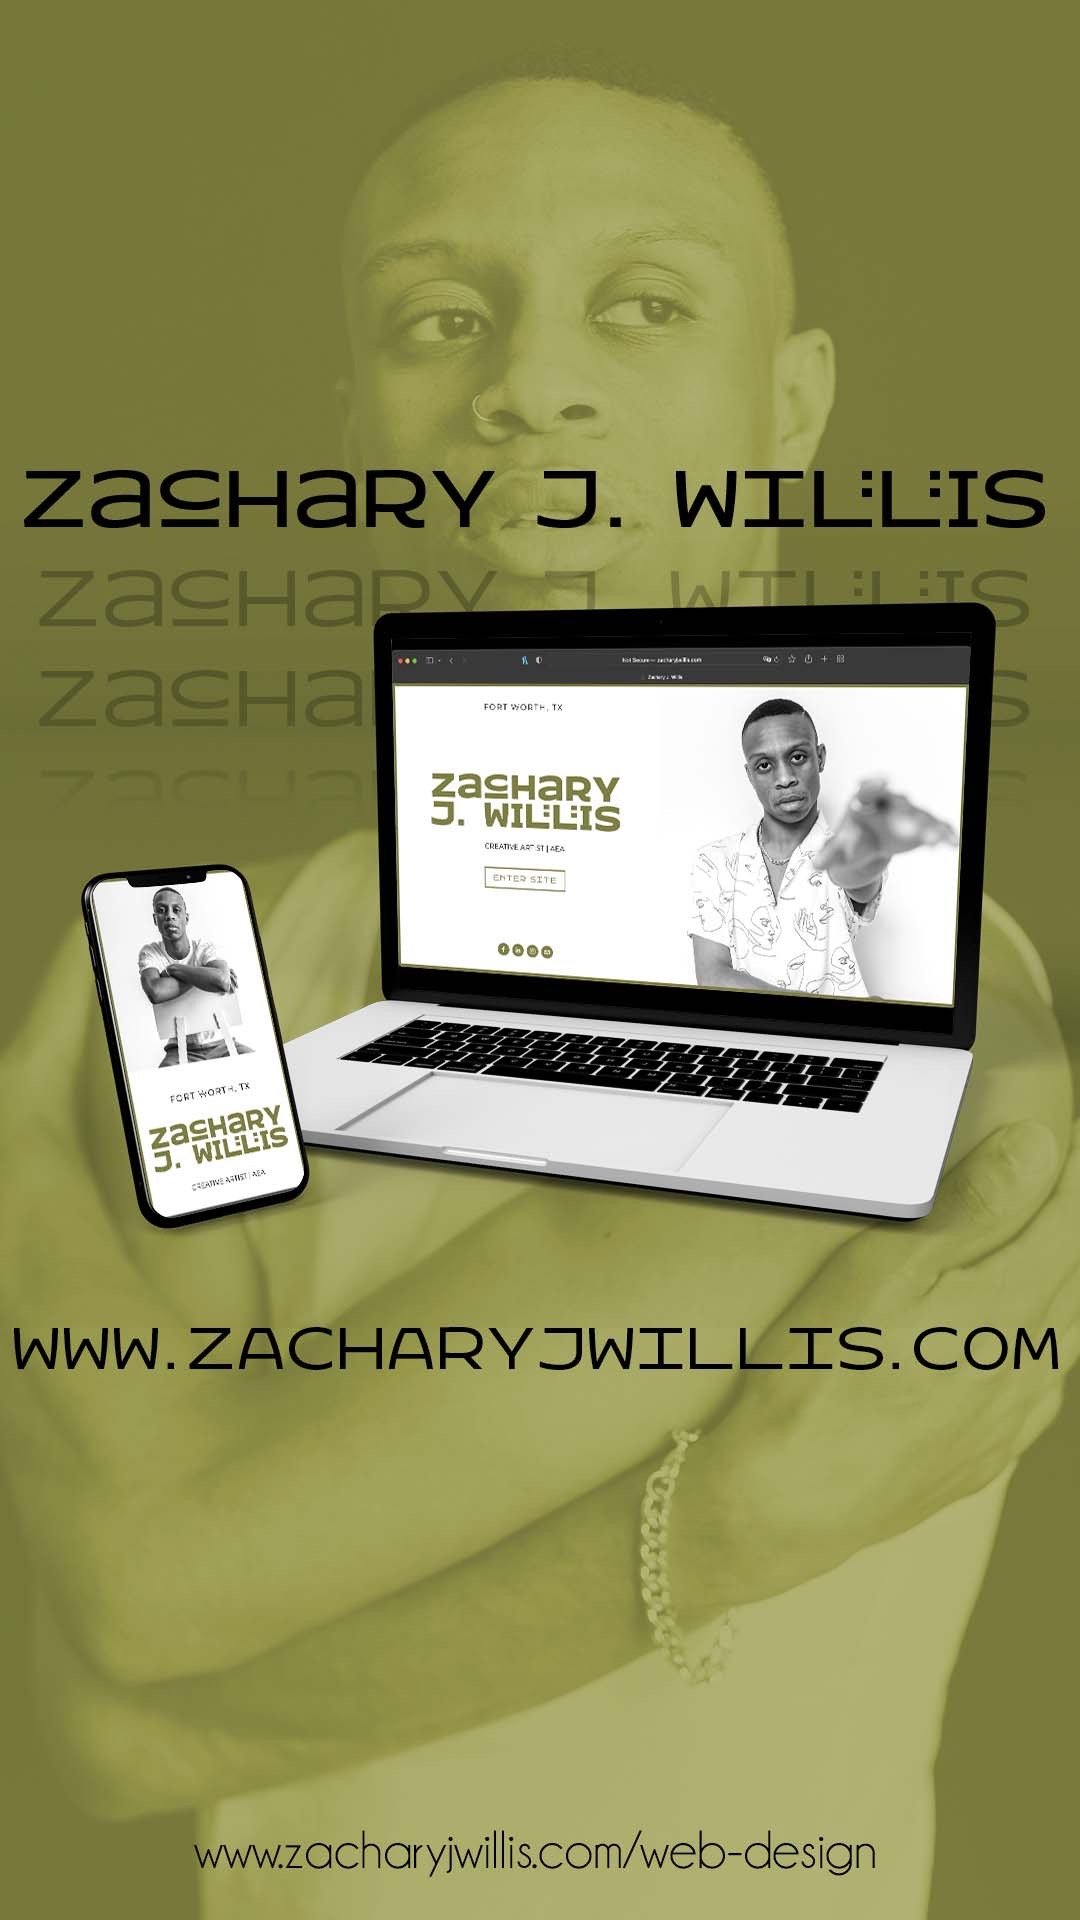 Zachary J. Willis